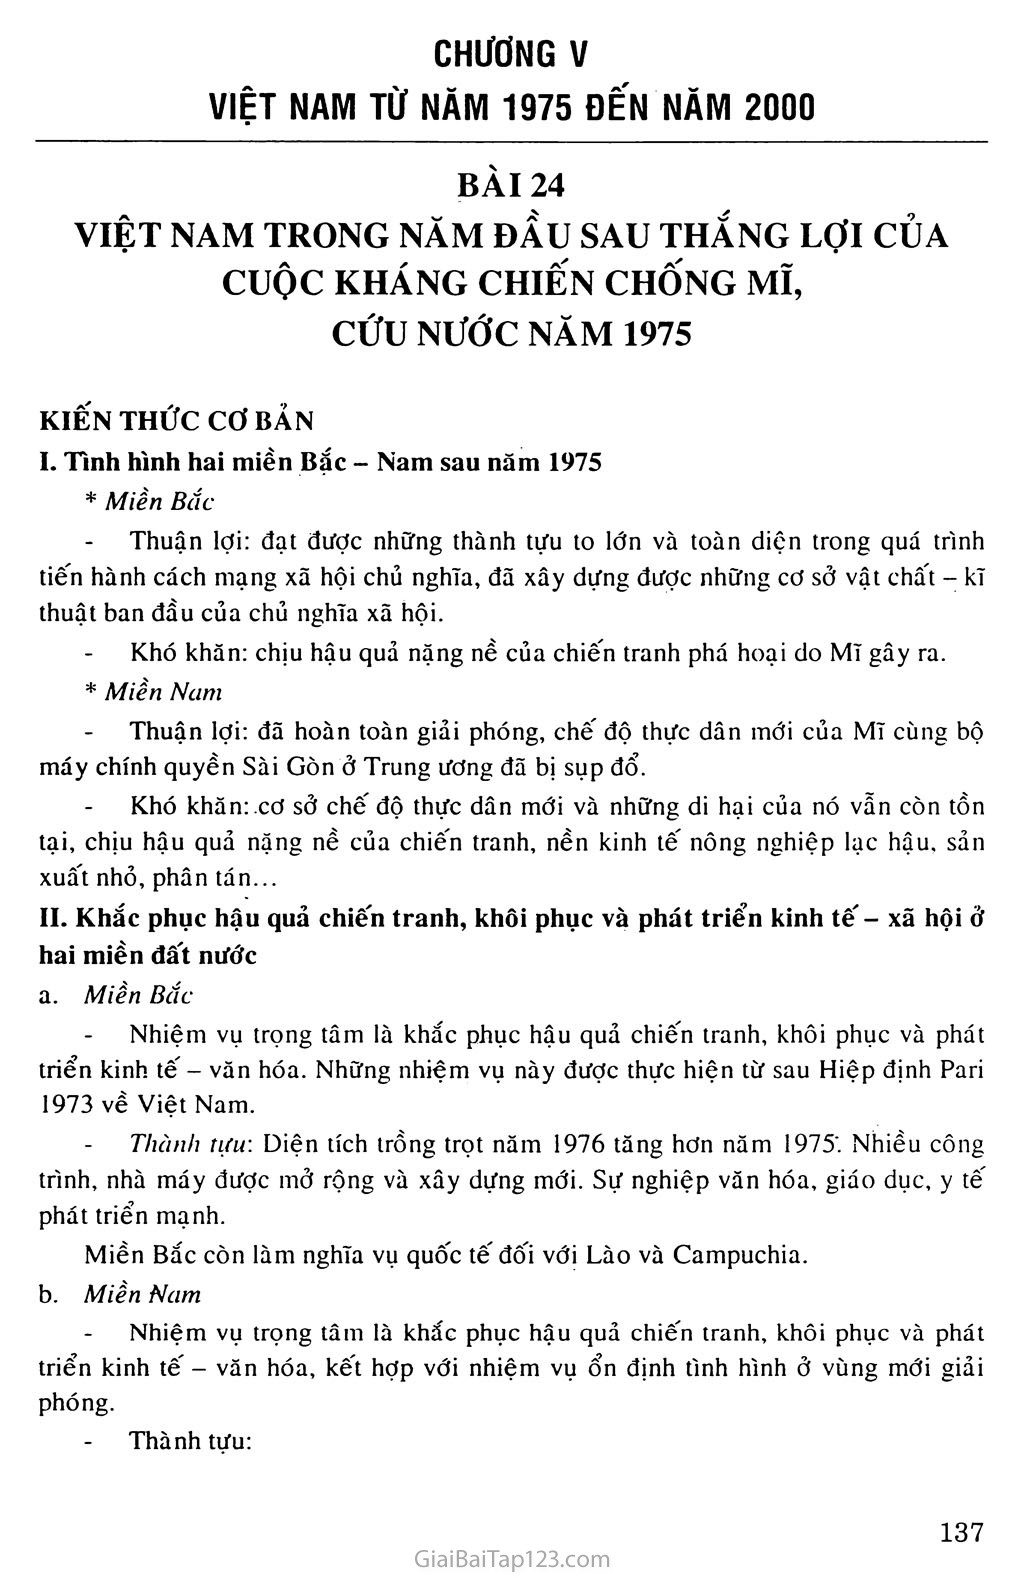 Bài 24: Việt Nam trong năm đầu sau thắng lợi của cuộc kháng chiến chống Mĩ, cứu nước năm 1975 trang 1